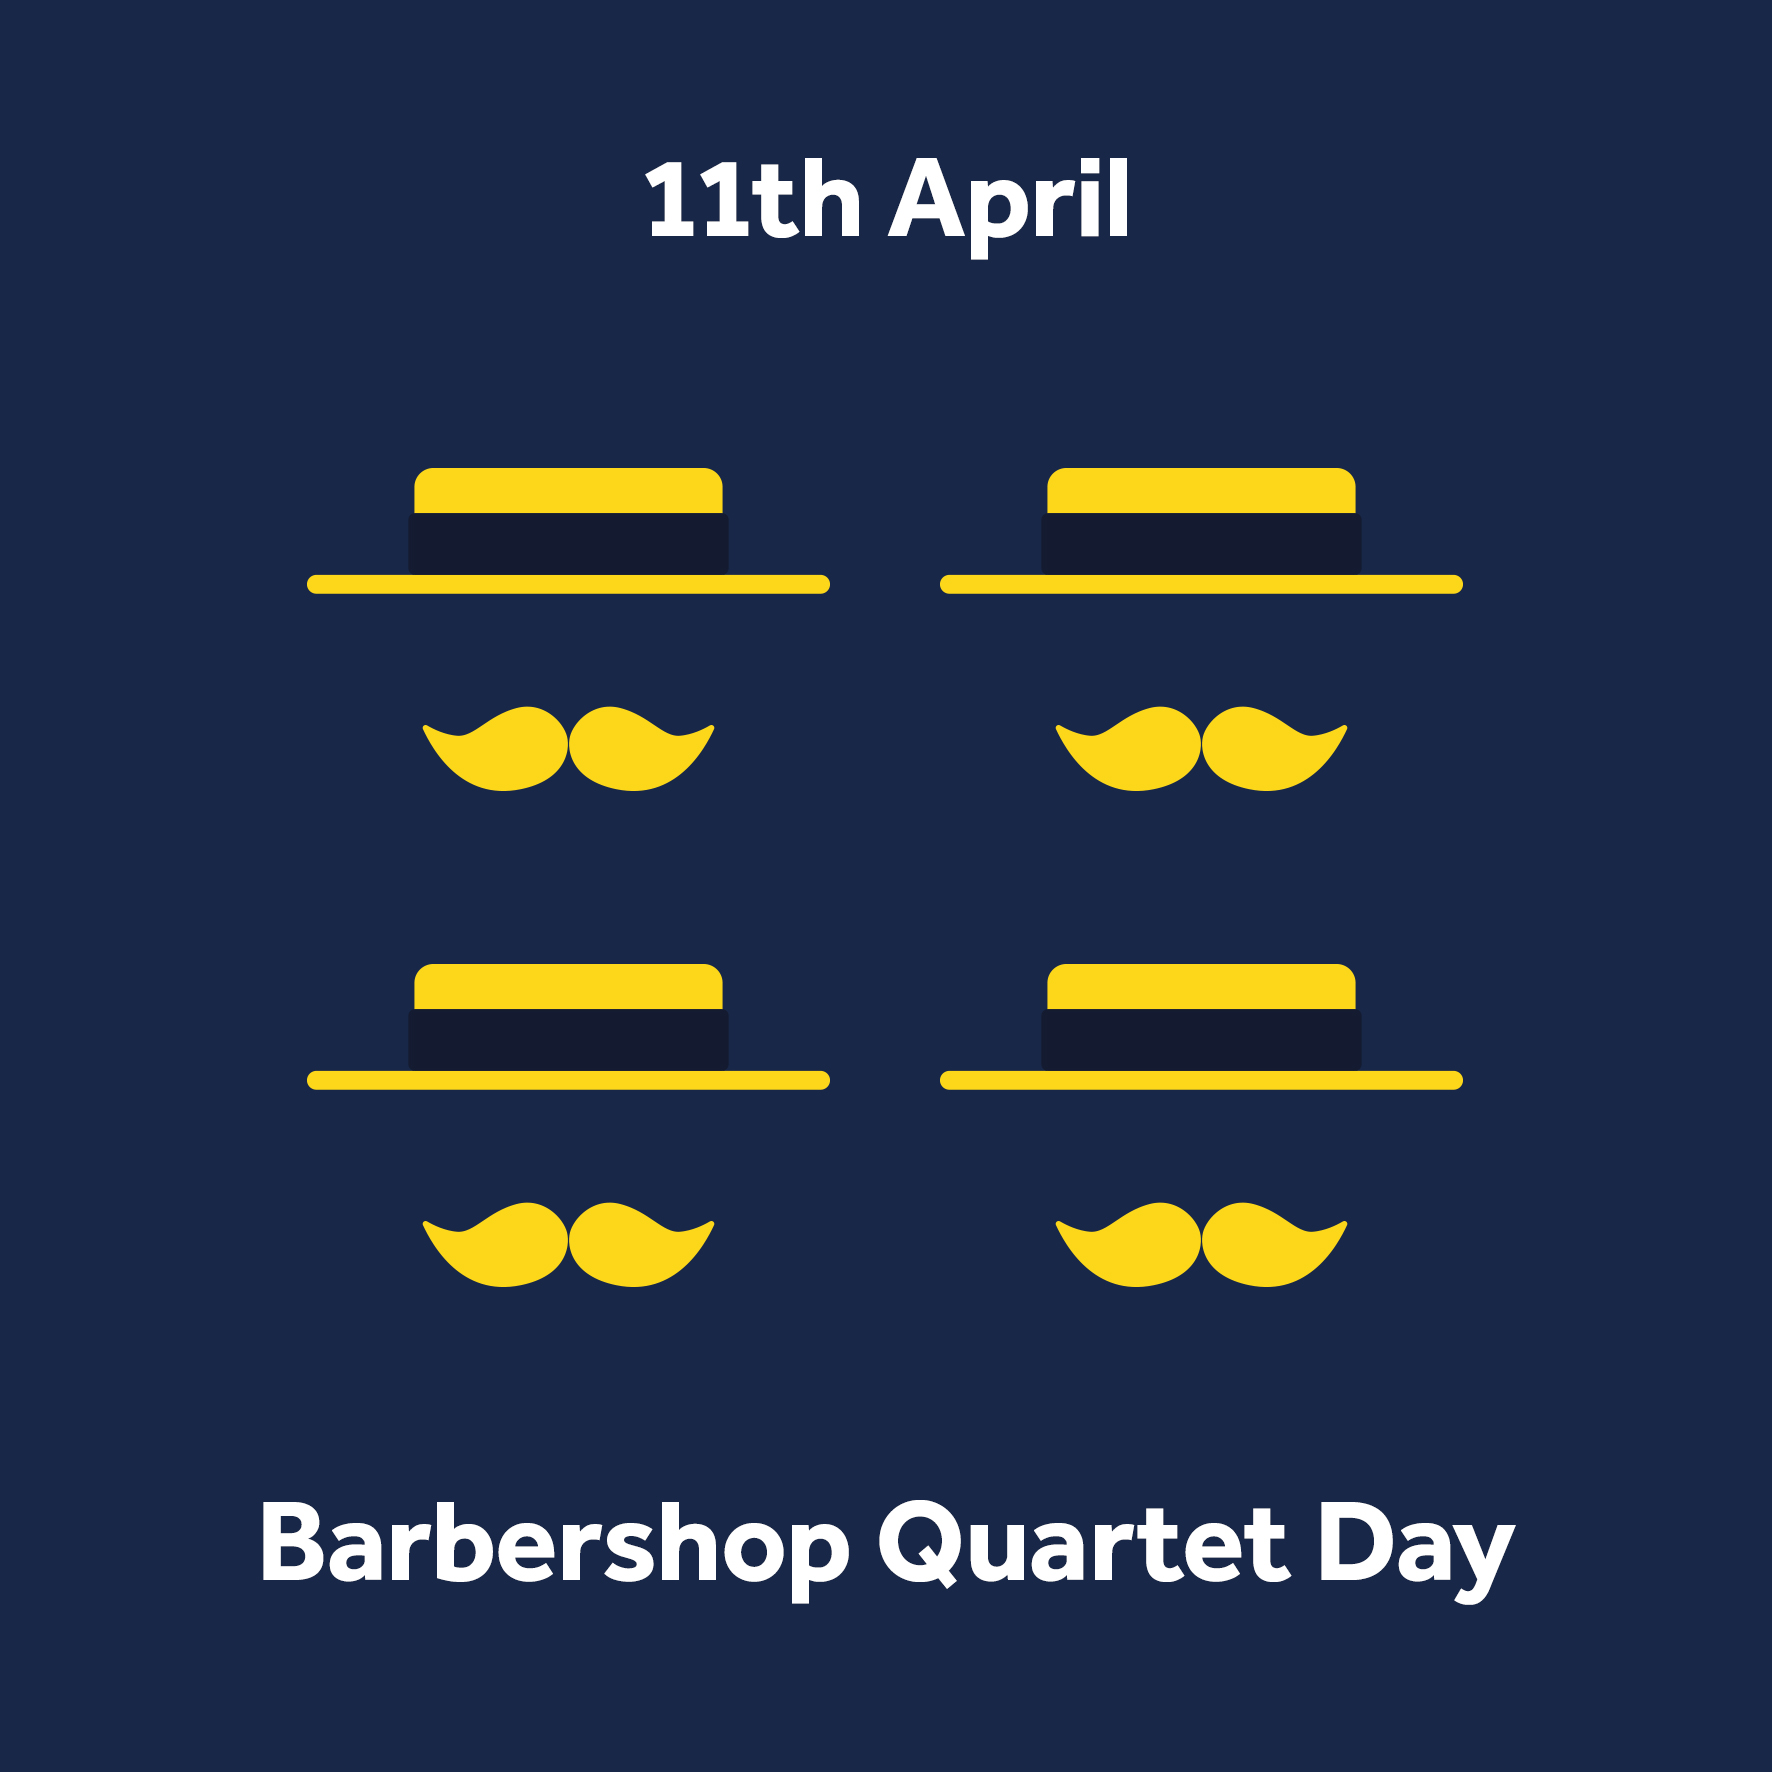 Barbershop Quartet Day